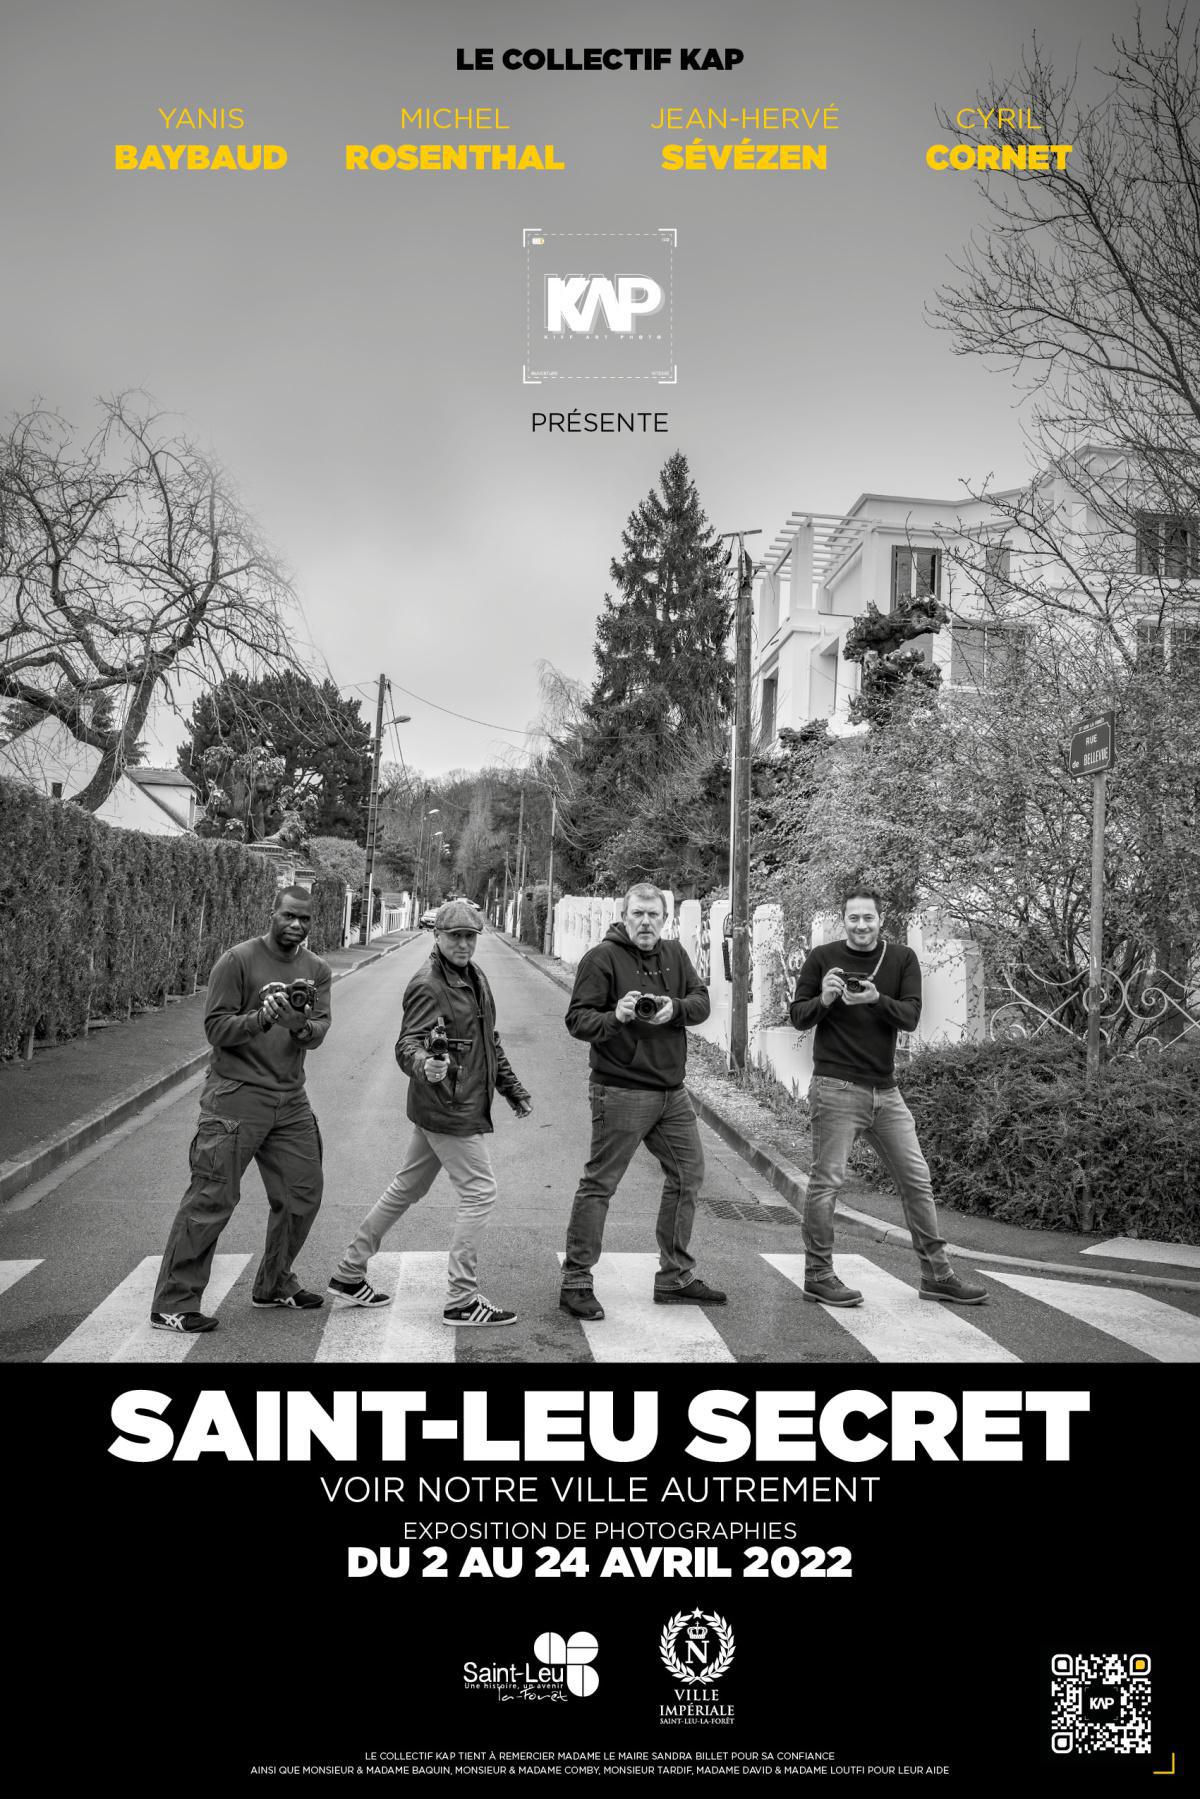 Notre expo Saint-Leu secret